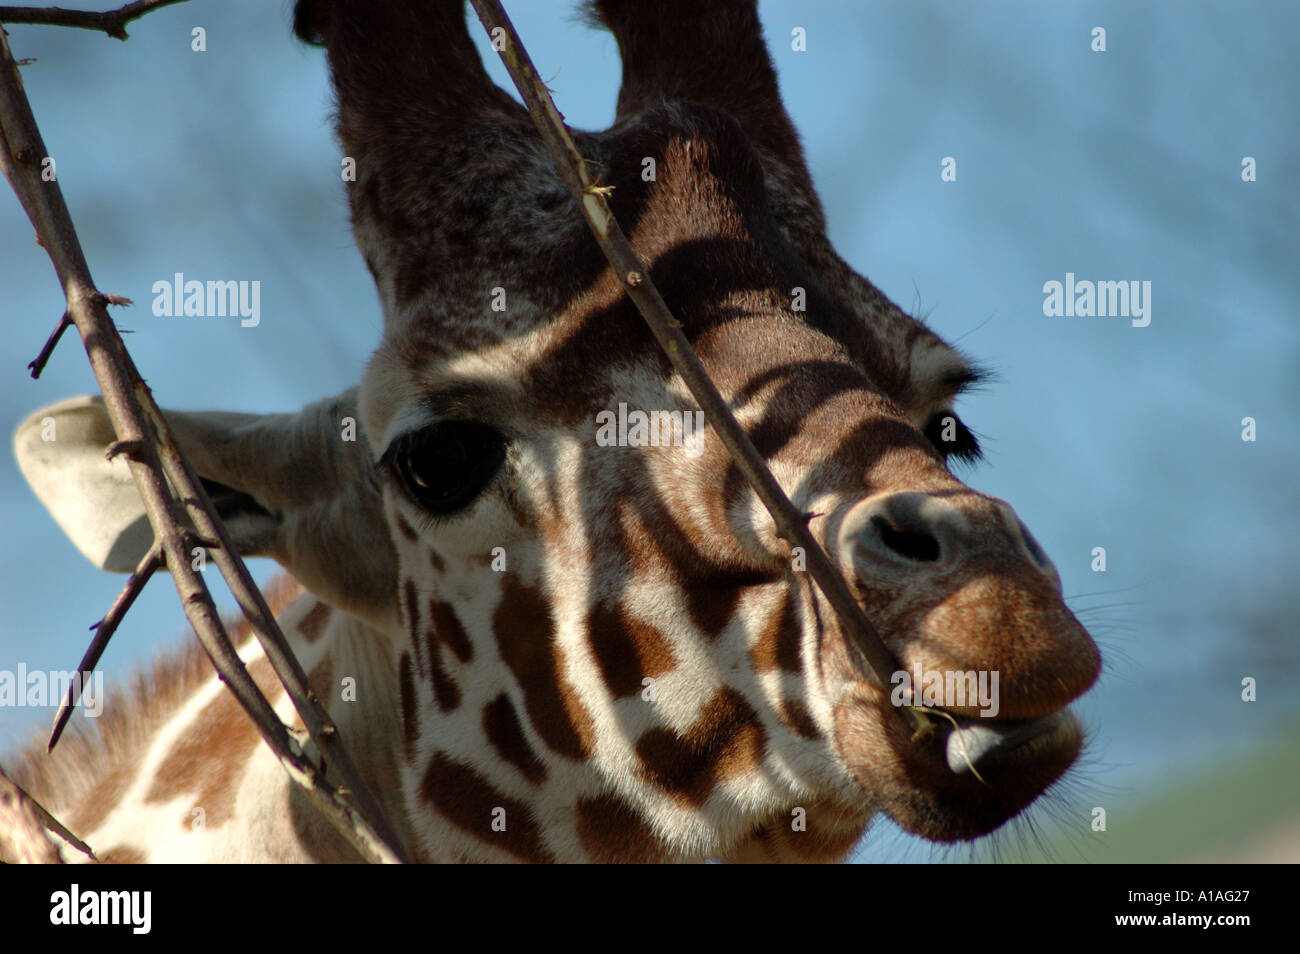 Giraffe eating by a shady tree Stock Photo